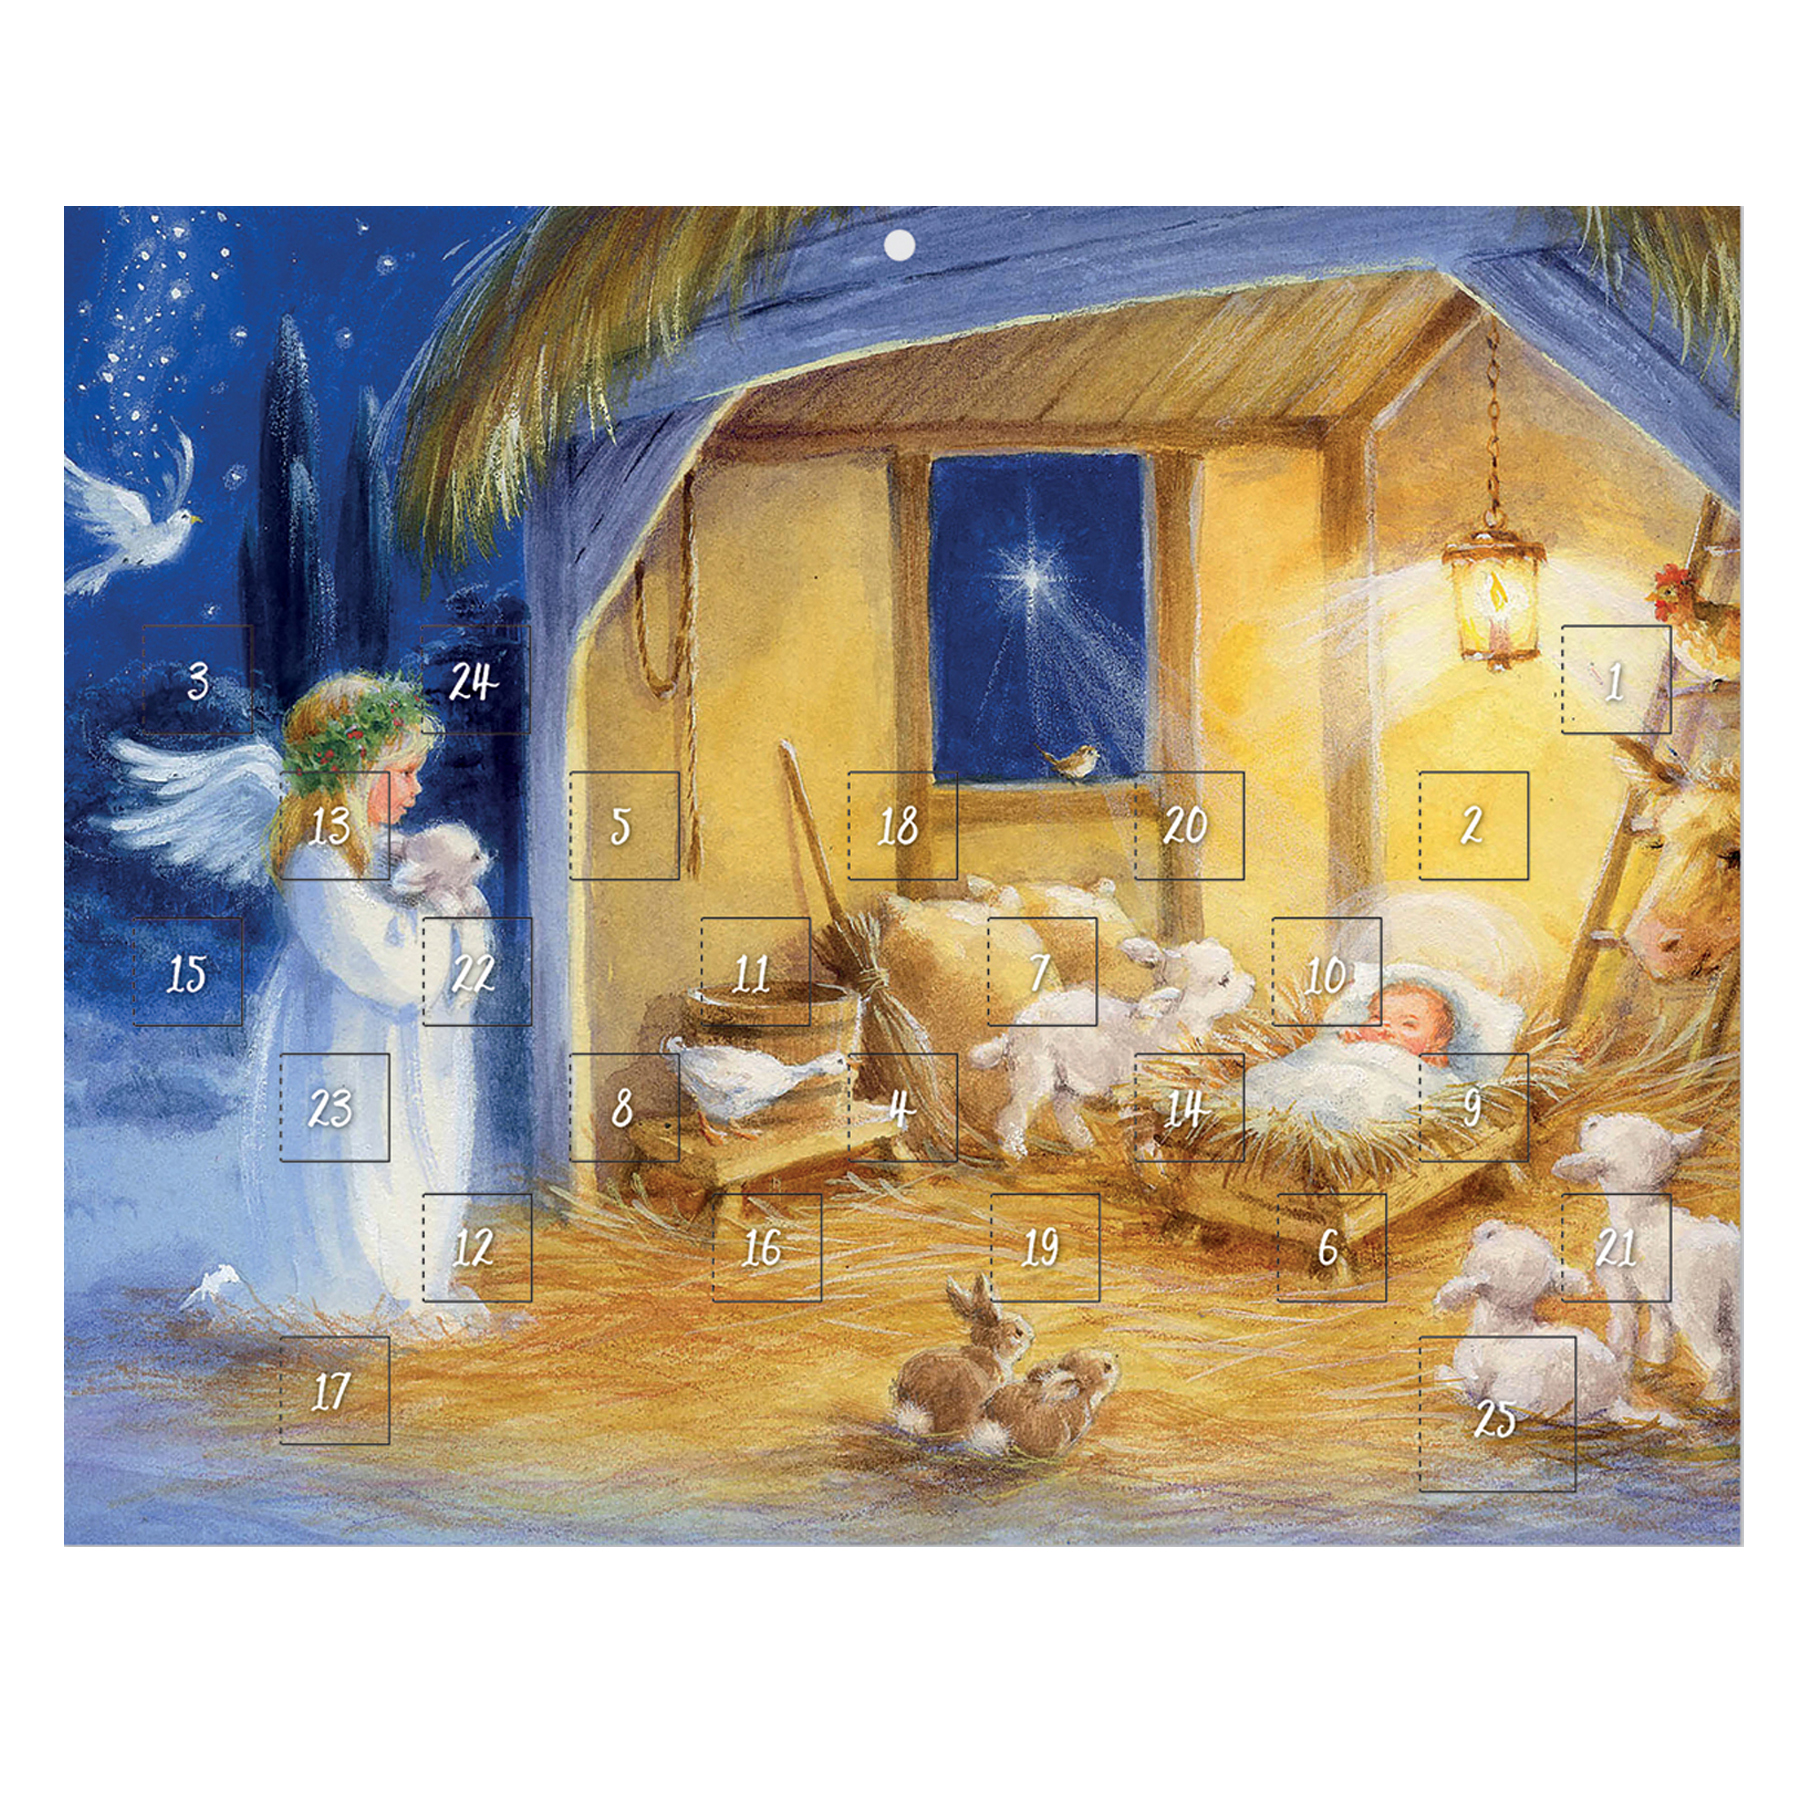 Christmas Advent Calendar - 24 Windows - 8463 Traditional Nativity Design